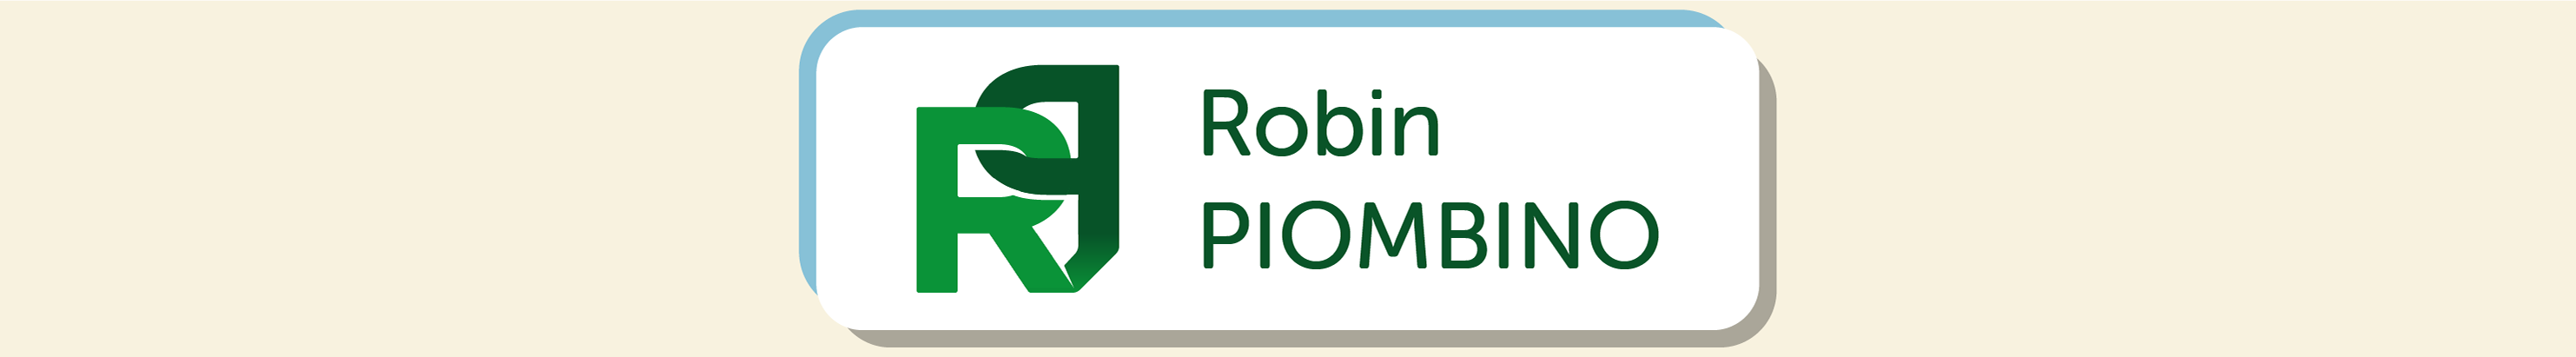 Robin PIOMBINO 的個人檔案橫幅